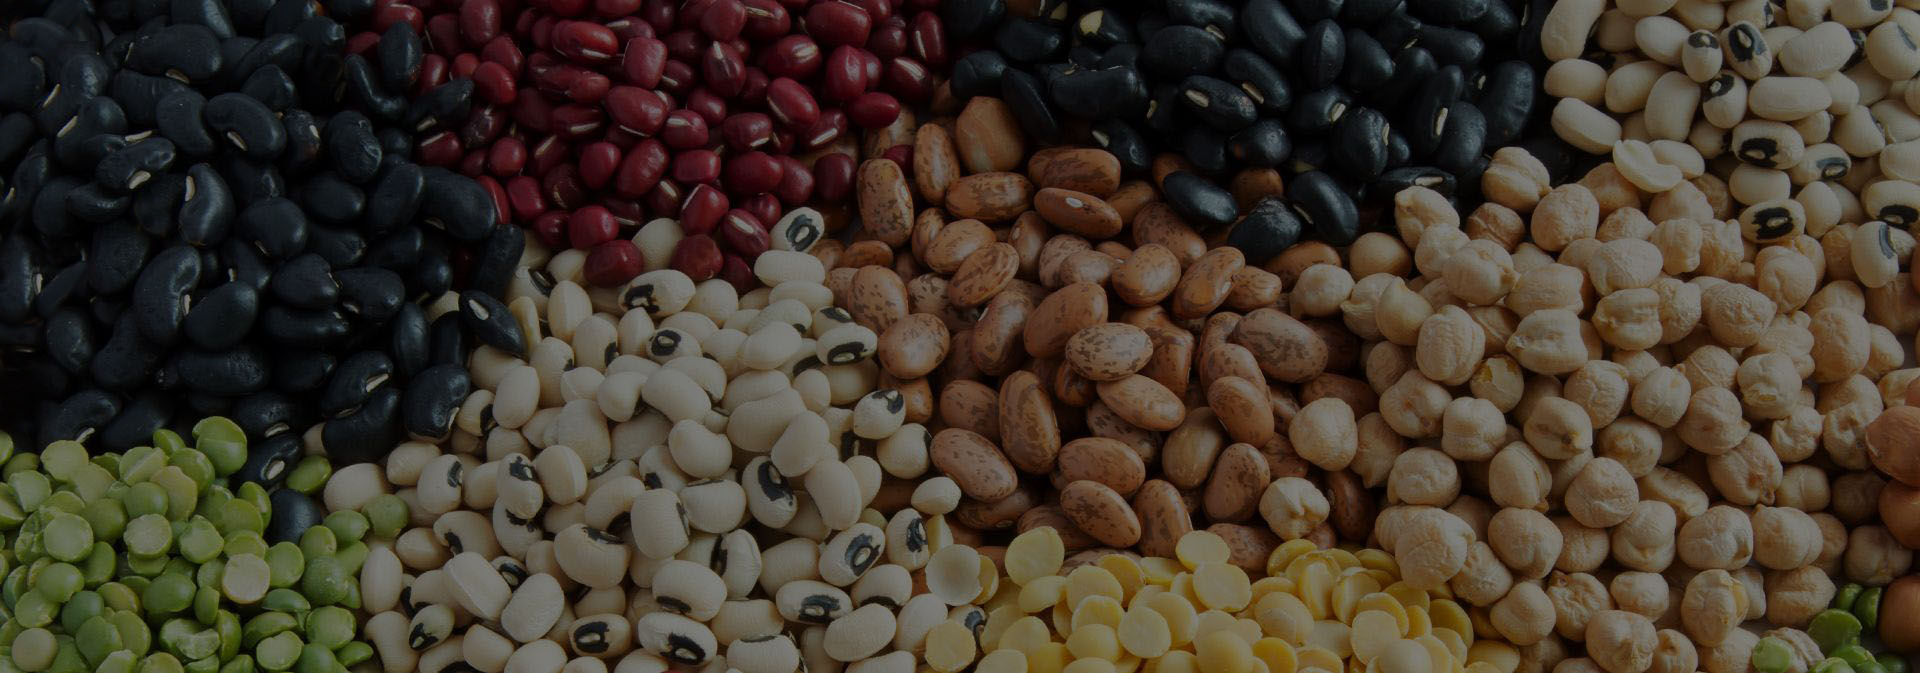 Frejoles andinos perubean lima peru importacion de granos arroz extraandino planta procesadora